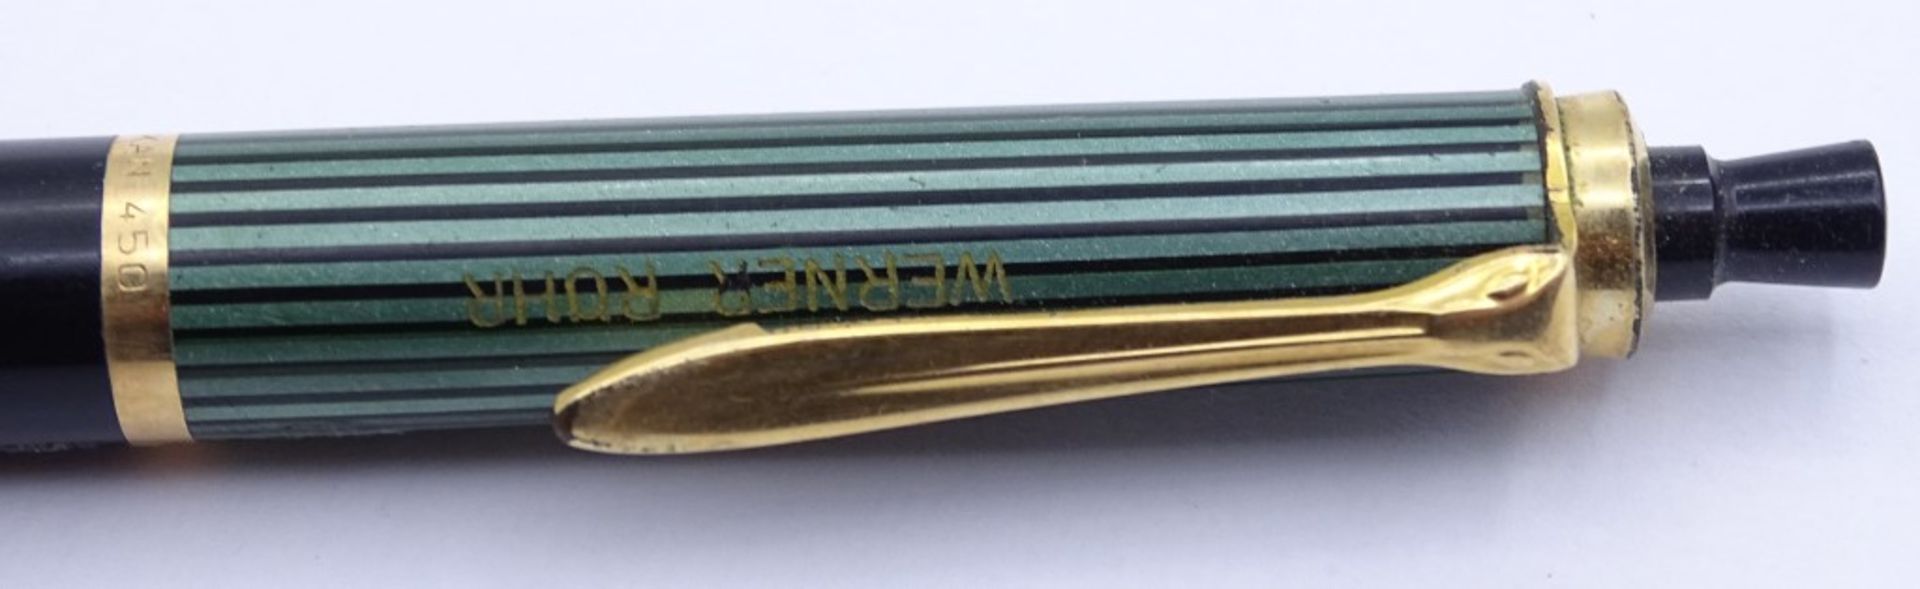 Schreibset "Pelikan" bestehend aus Füller u. Druckbleistift No. 400 & 450.Goldfeder 585/000, - Bild 6 aus 8